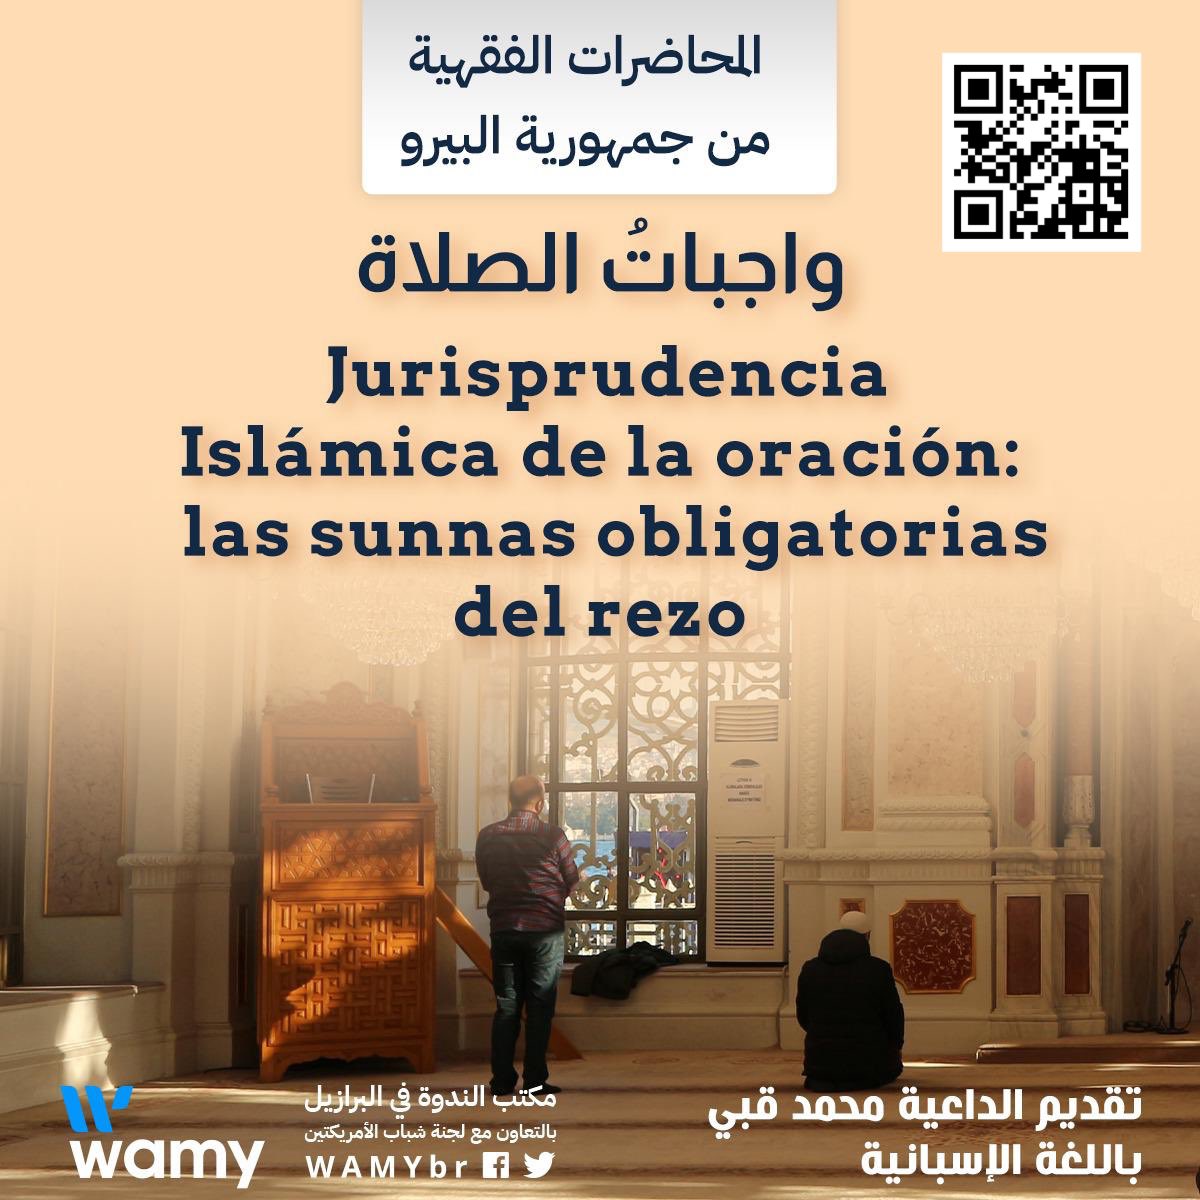 Jurisprudencia Islámica de la oración: las sunnas obligatorias del rezo